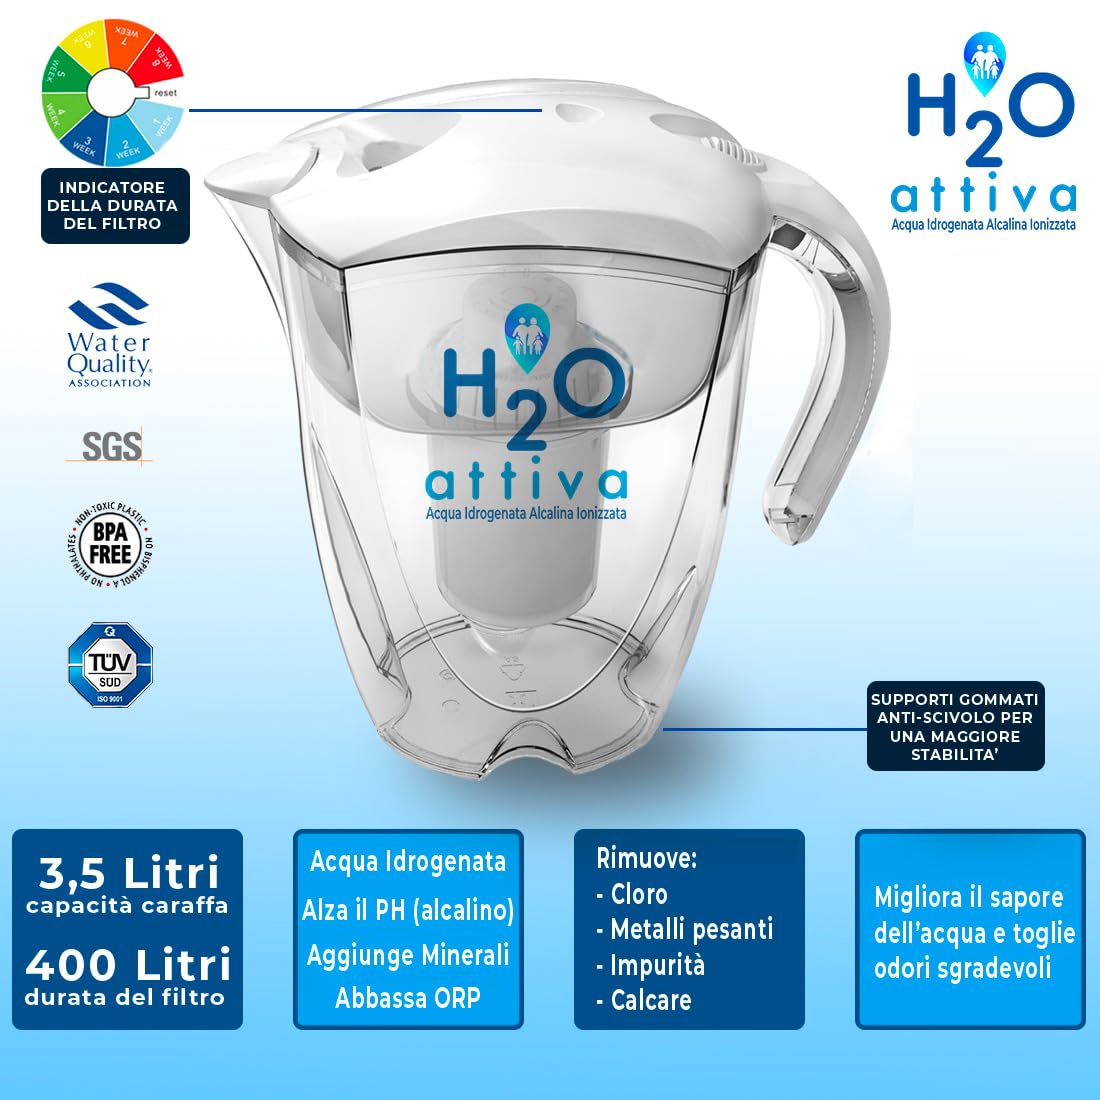 Caraffa H2O Attiva - Acqua Idrogenata Alcalina Ionizzata